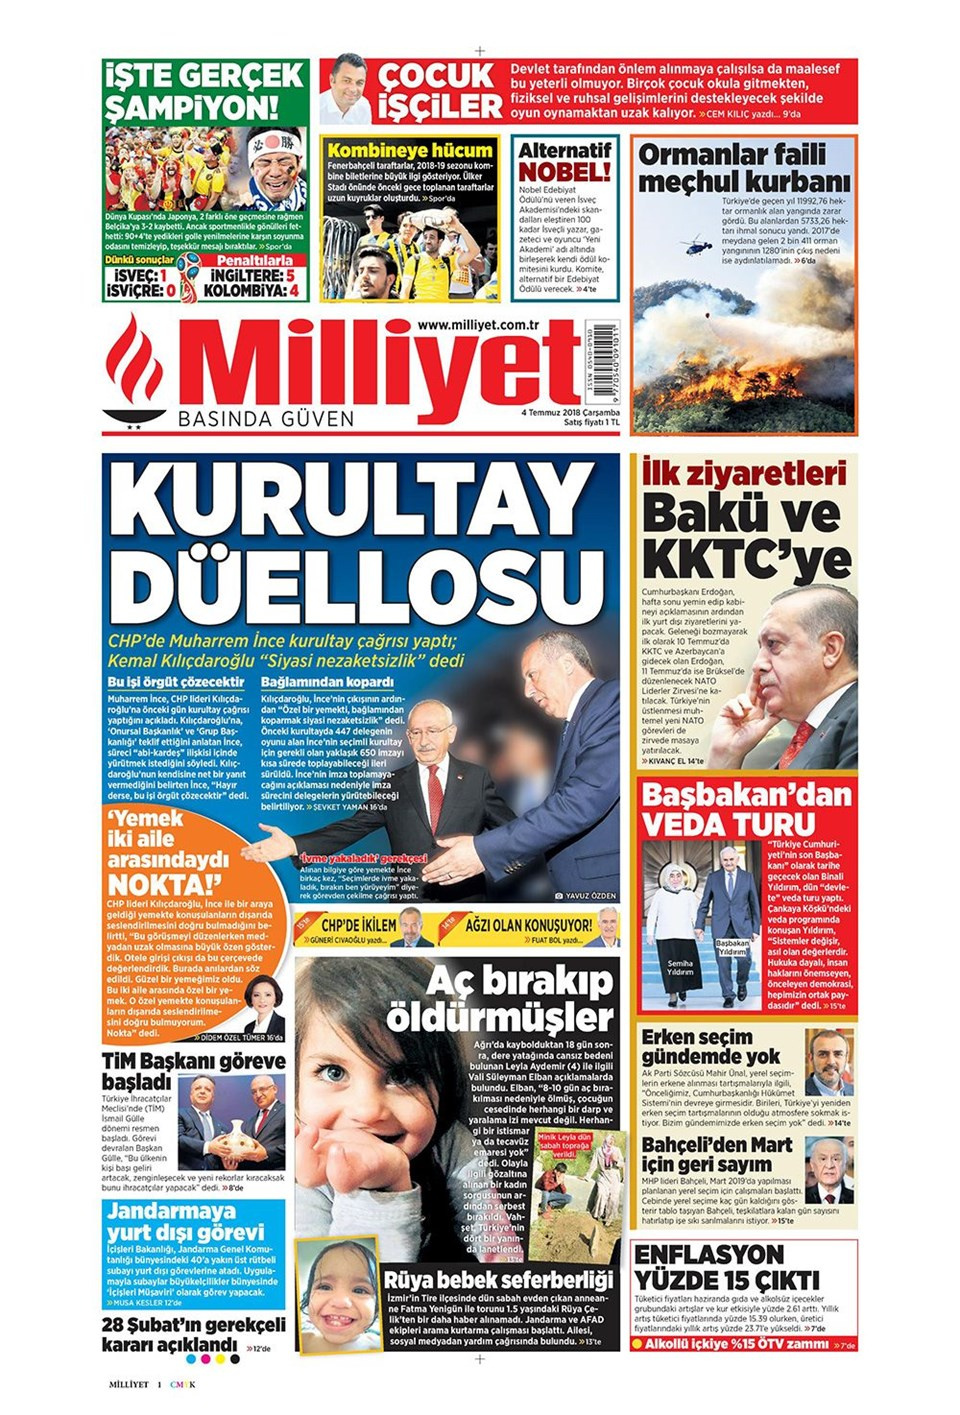 Gazete manşetleri 4 Temmuz 2018 Hürriyet - Sözcü - Habertürk